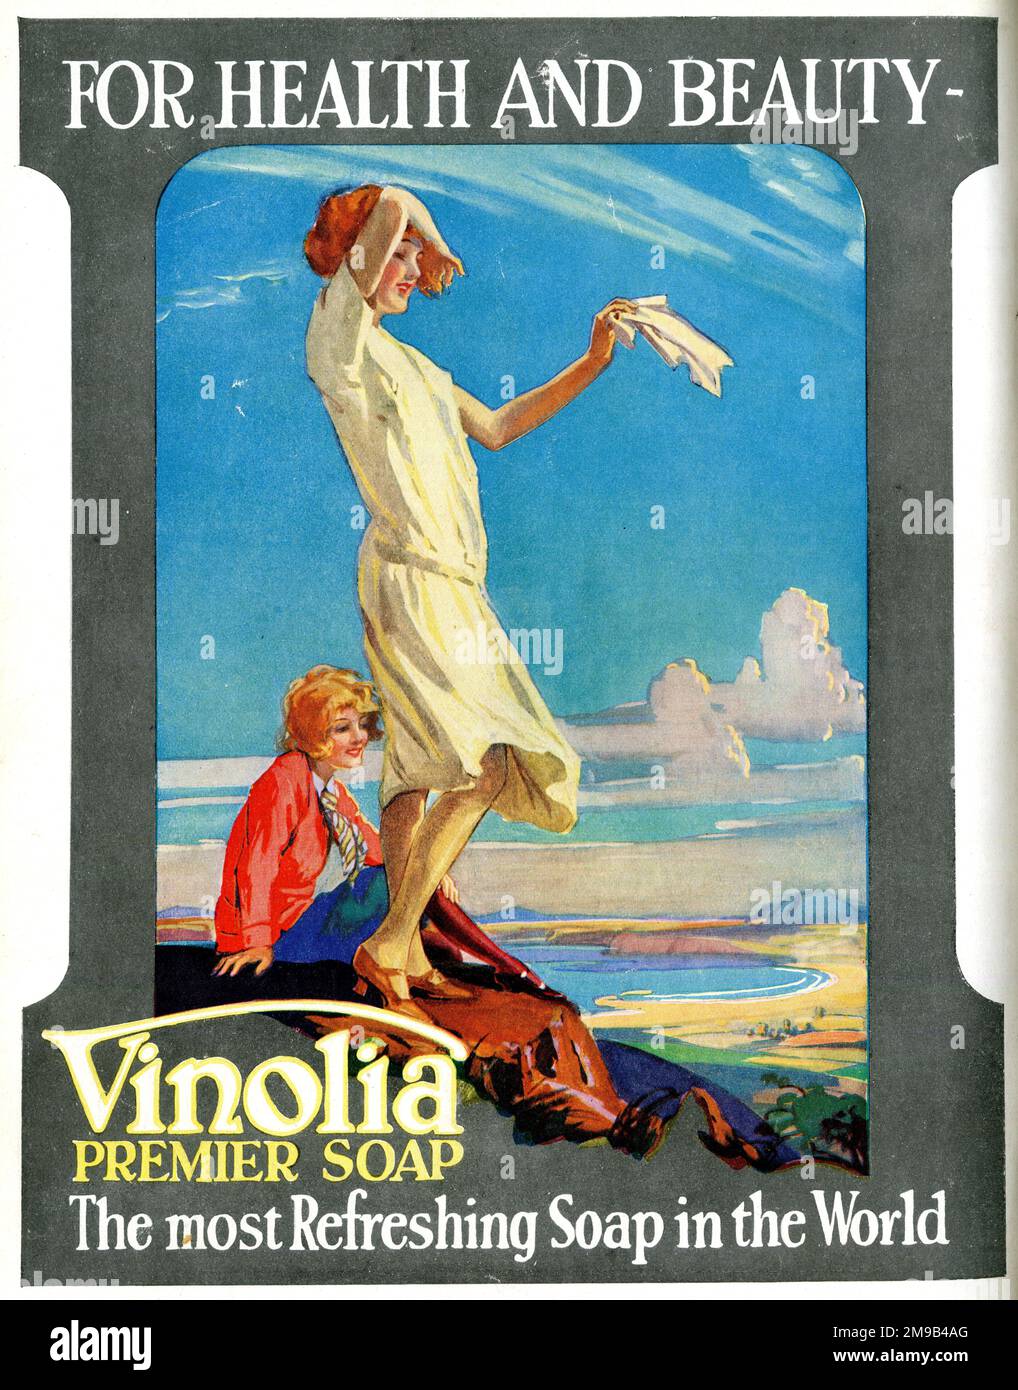 Werbespot, Vinolia Premier Seife für Gesundheit und Schönheit, die erfrischendste Seife der Welt. Stockfoto